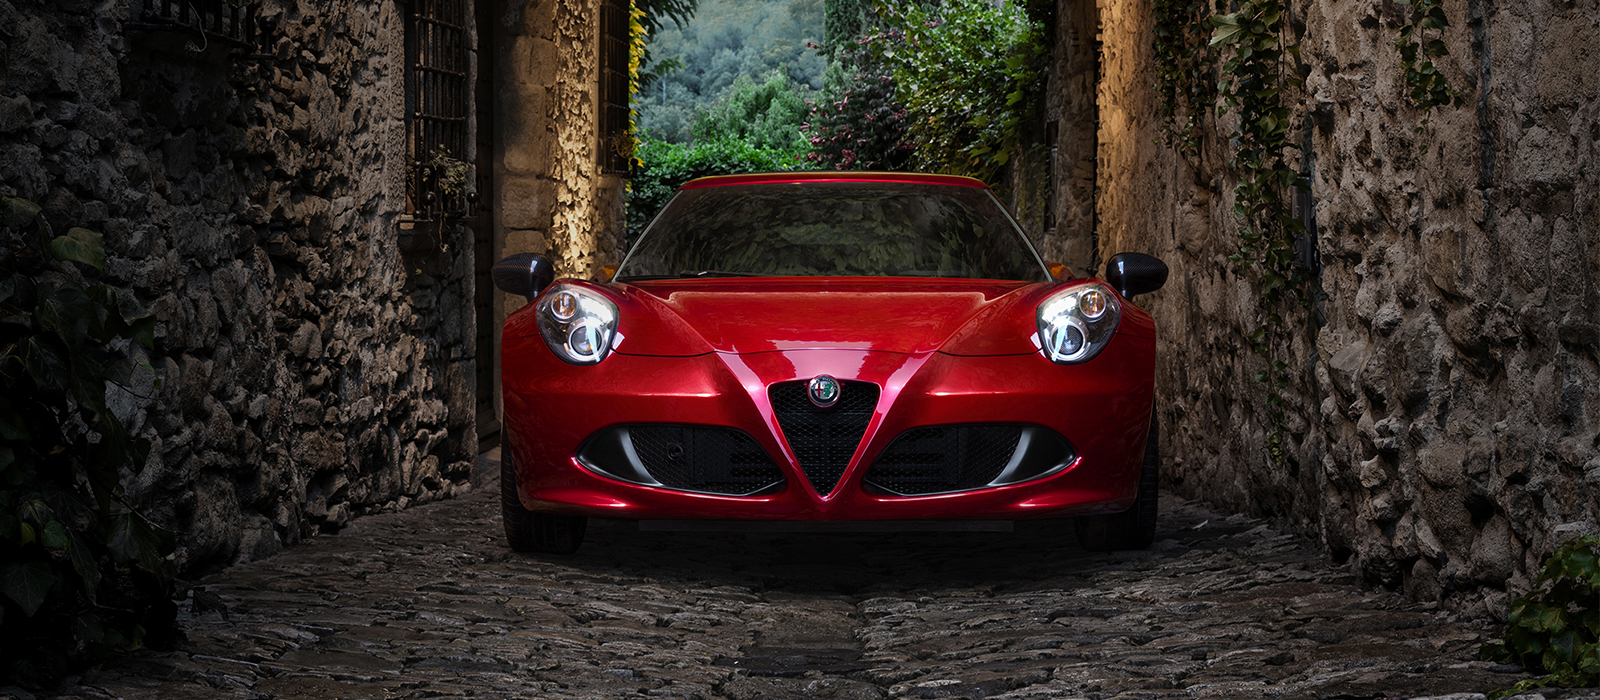 Alfa Romeo 4c 1600x700 Wallpaper Teahub Io